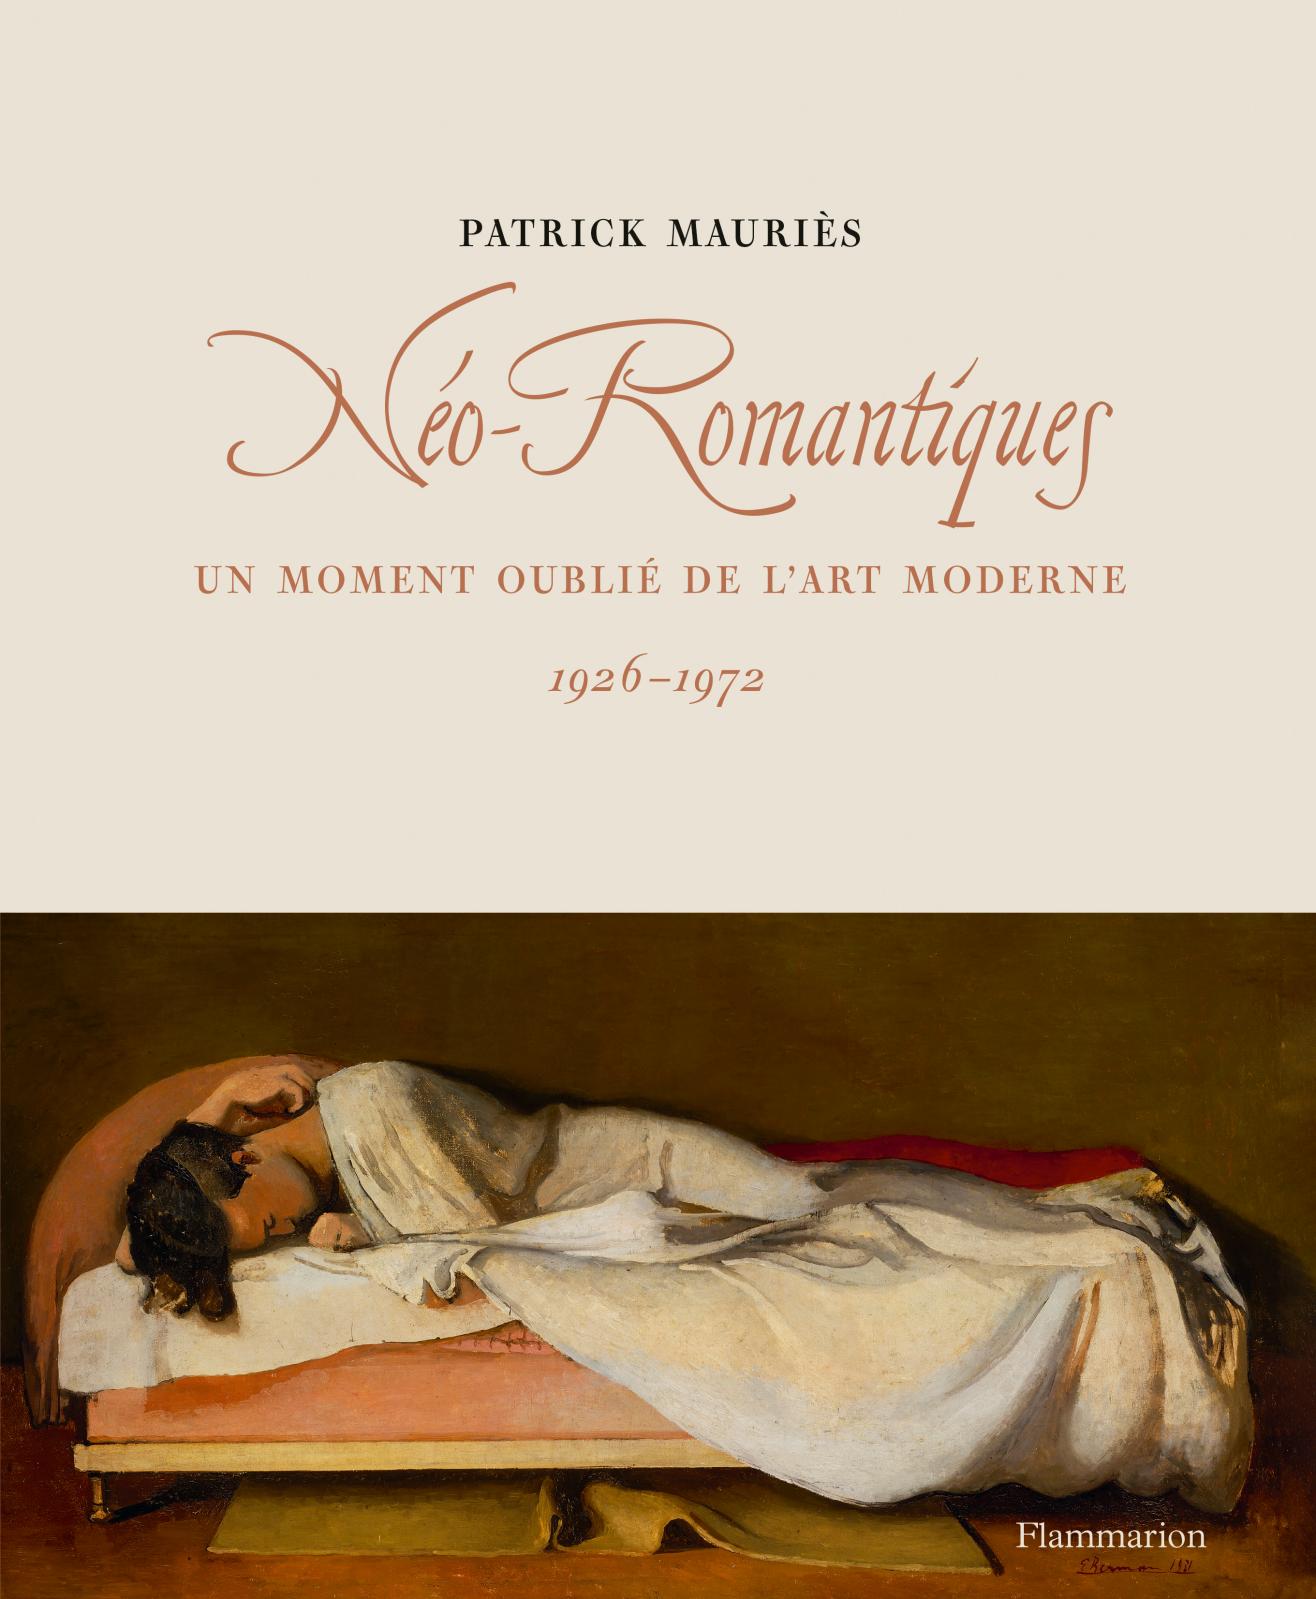 Les “Néo-Romantiques” sous la plume de Patrick Mauriès